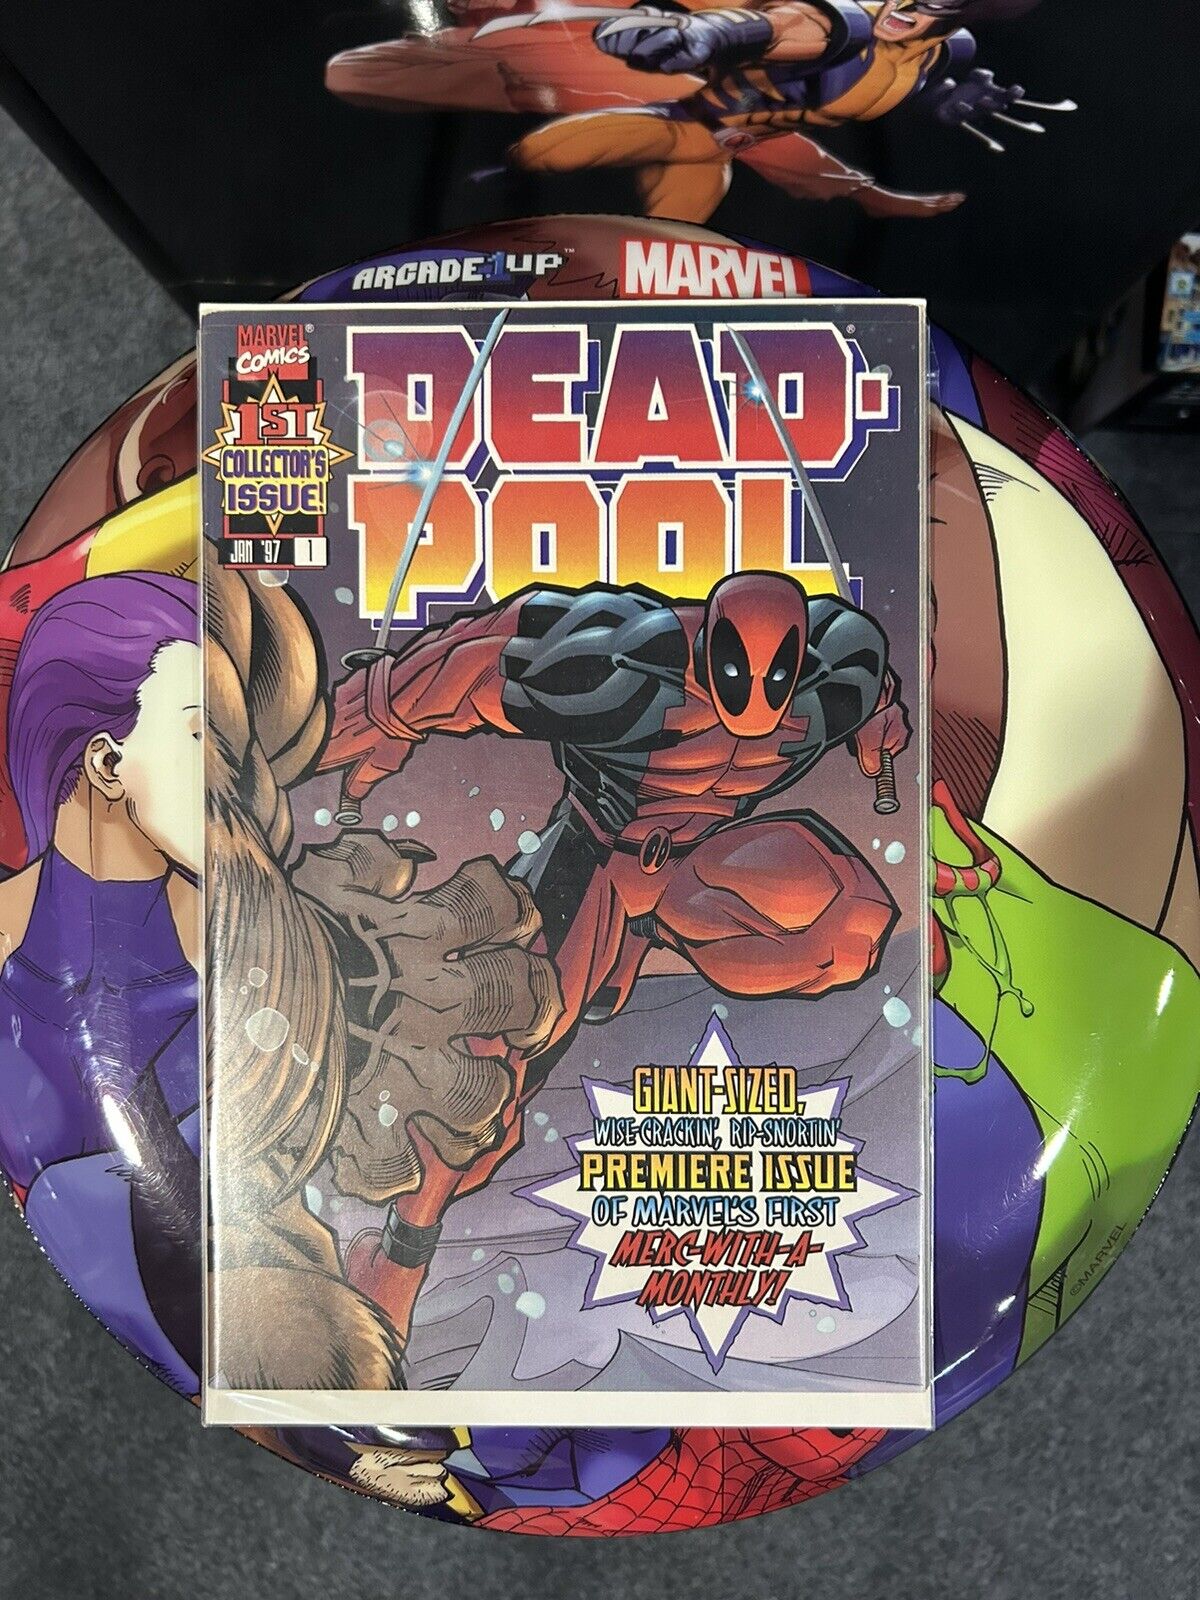 Deadpool #1 (Marvel Comics January 1997)